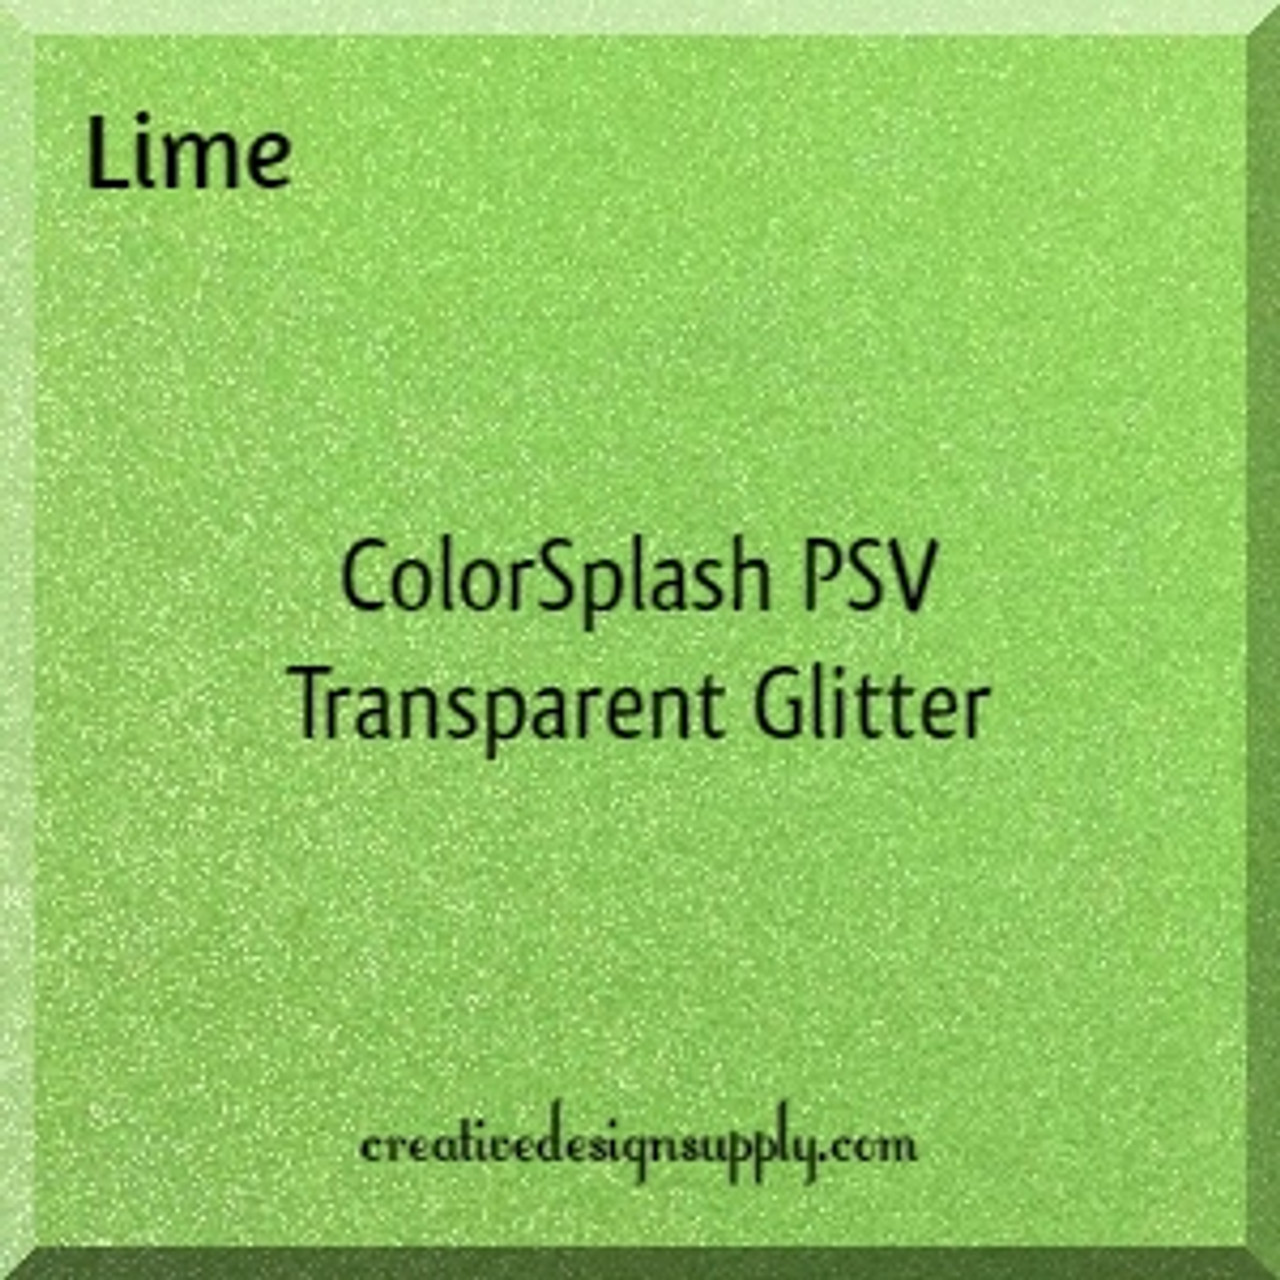 ColorSplash PSV Transparent Glitter | Lime